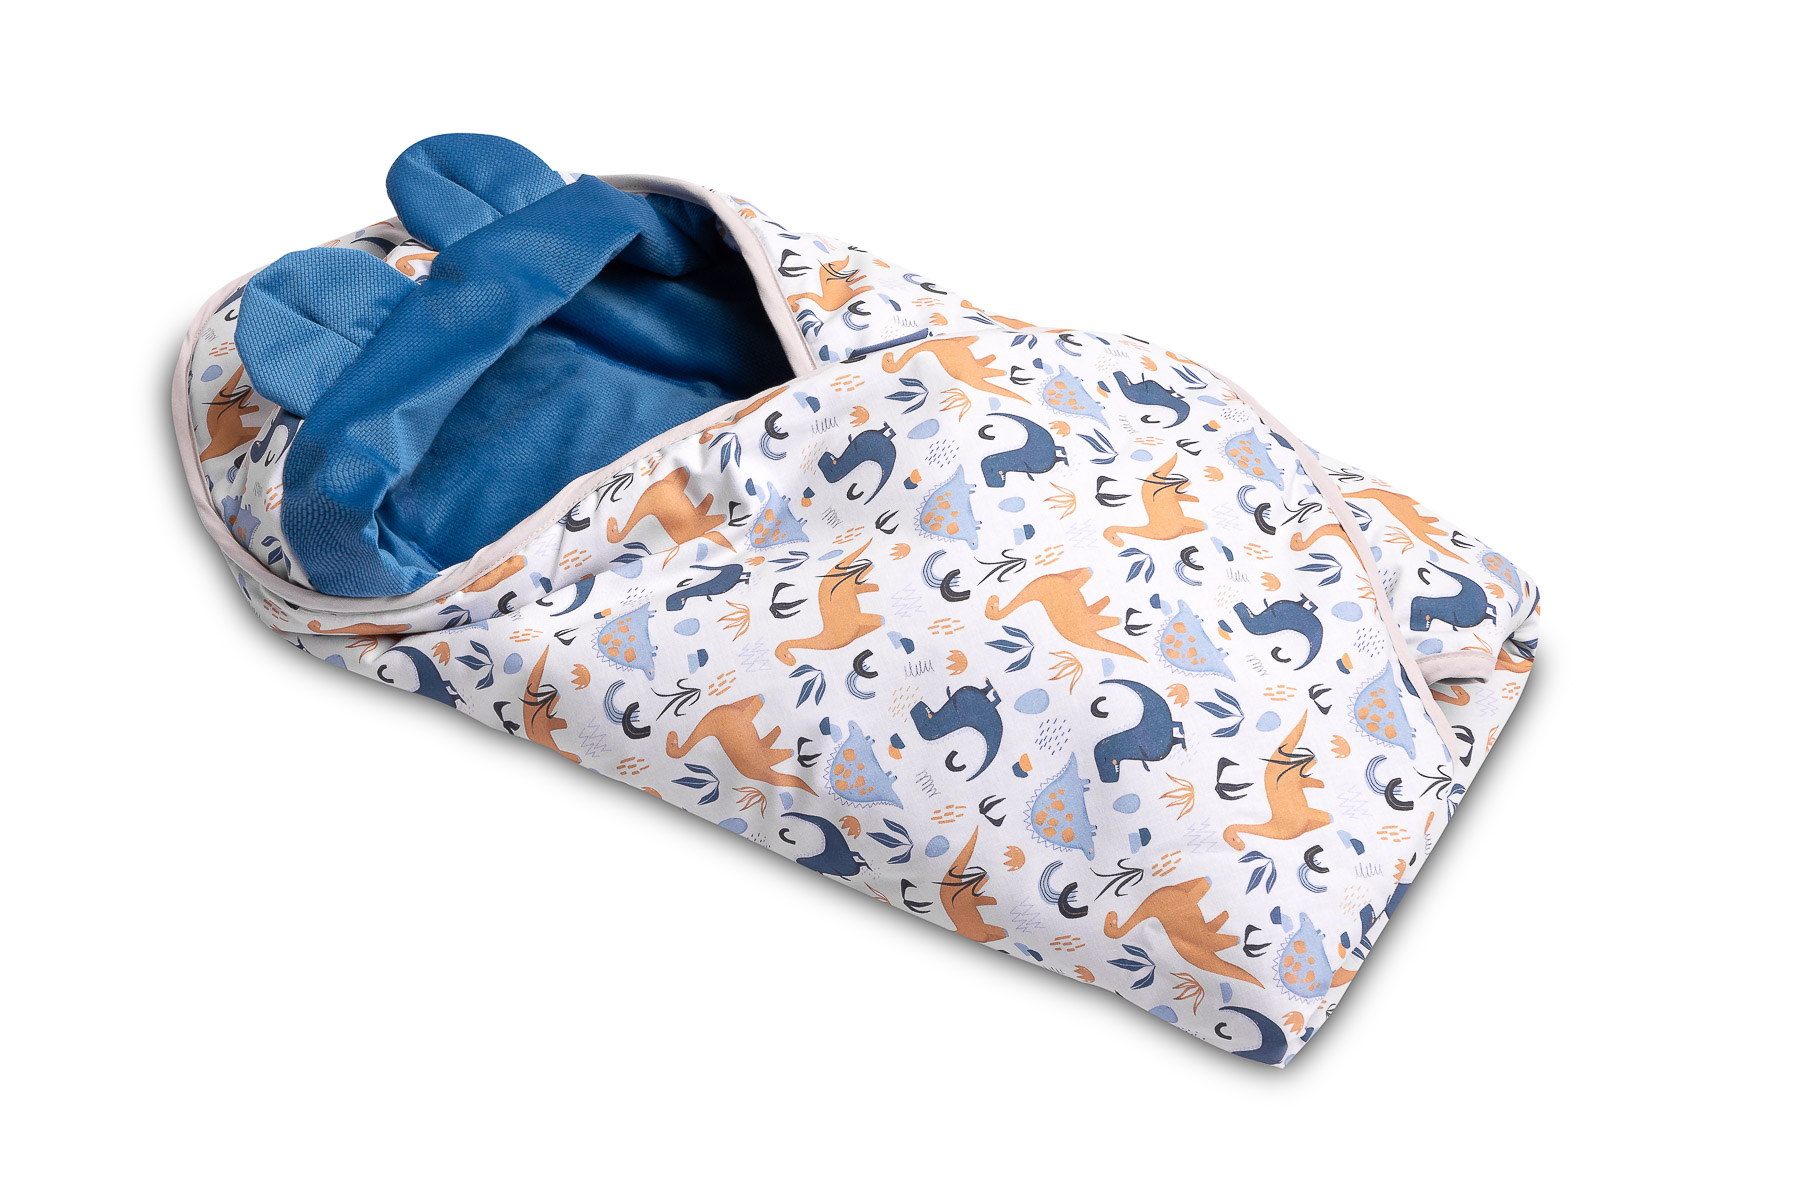 Velvet carry-cot swaddle blanket – Blue Dinosaurs